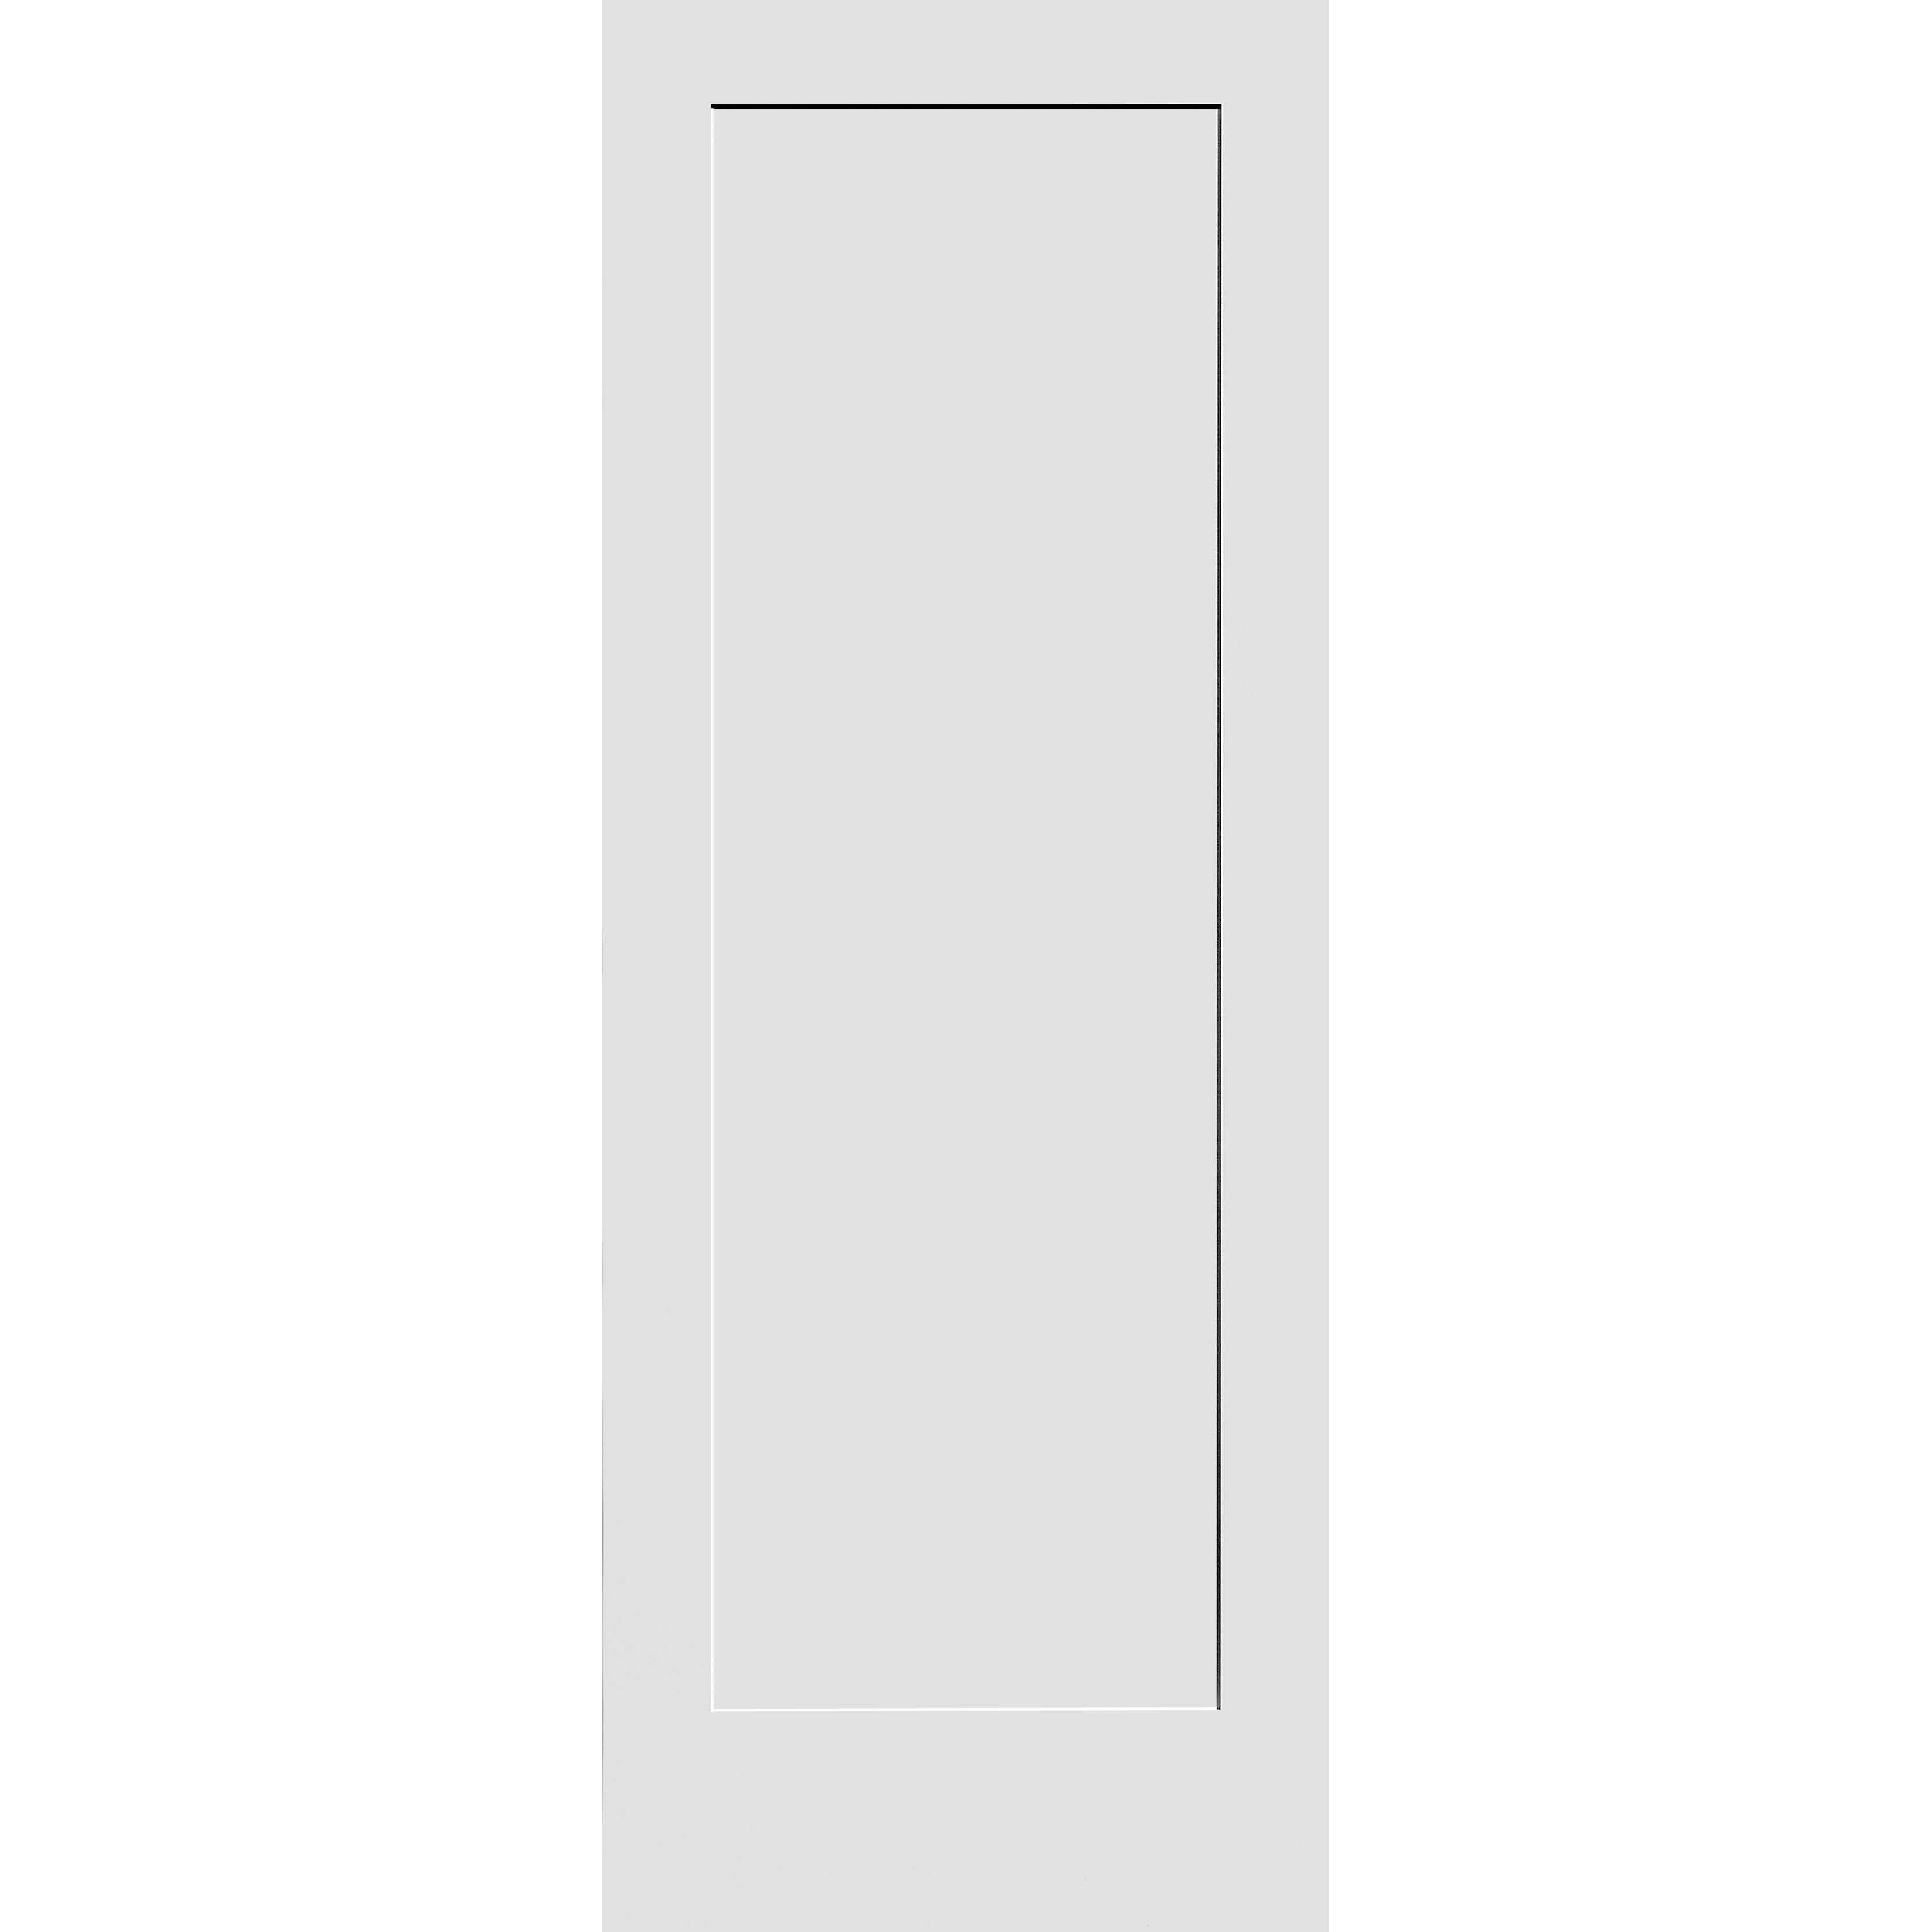 34X80 #8401 MDF PRIMED SHAKER PANEL INTERIOR DOOR